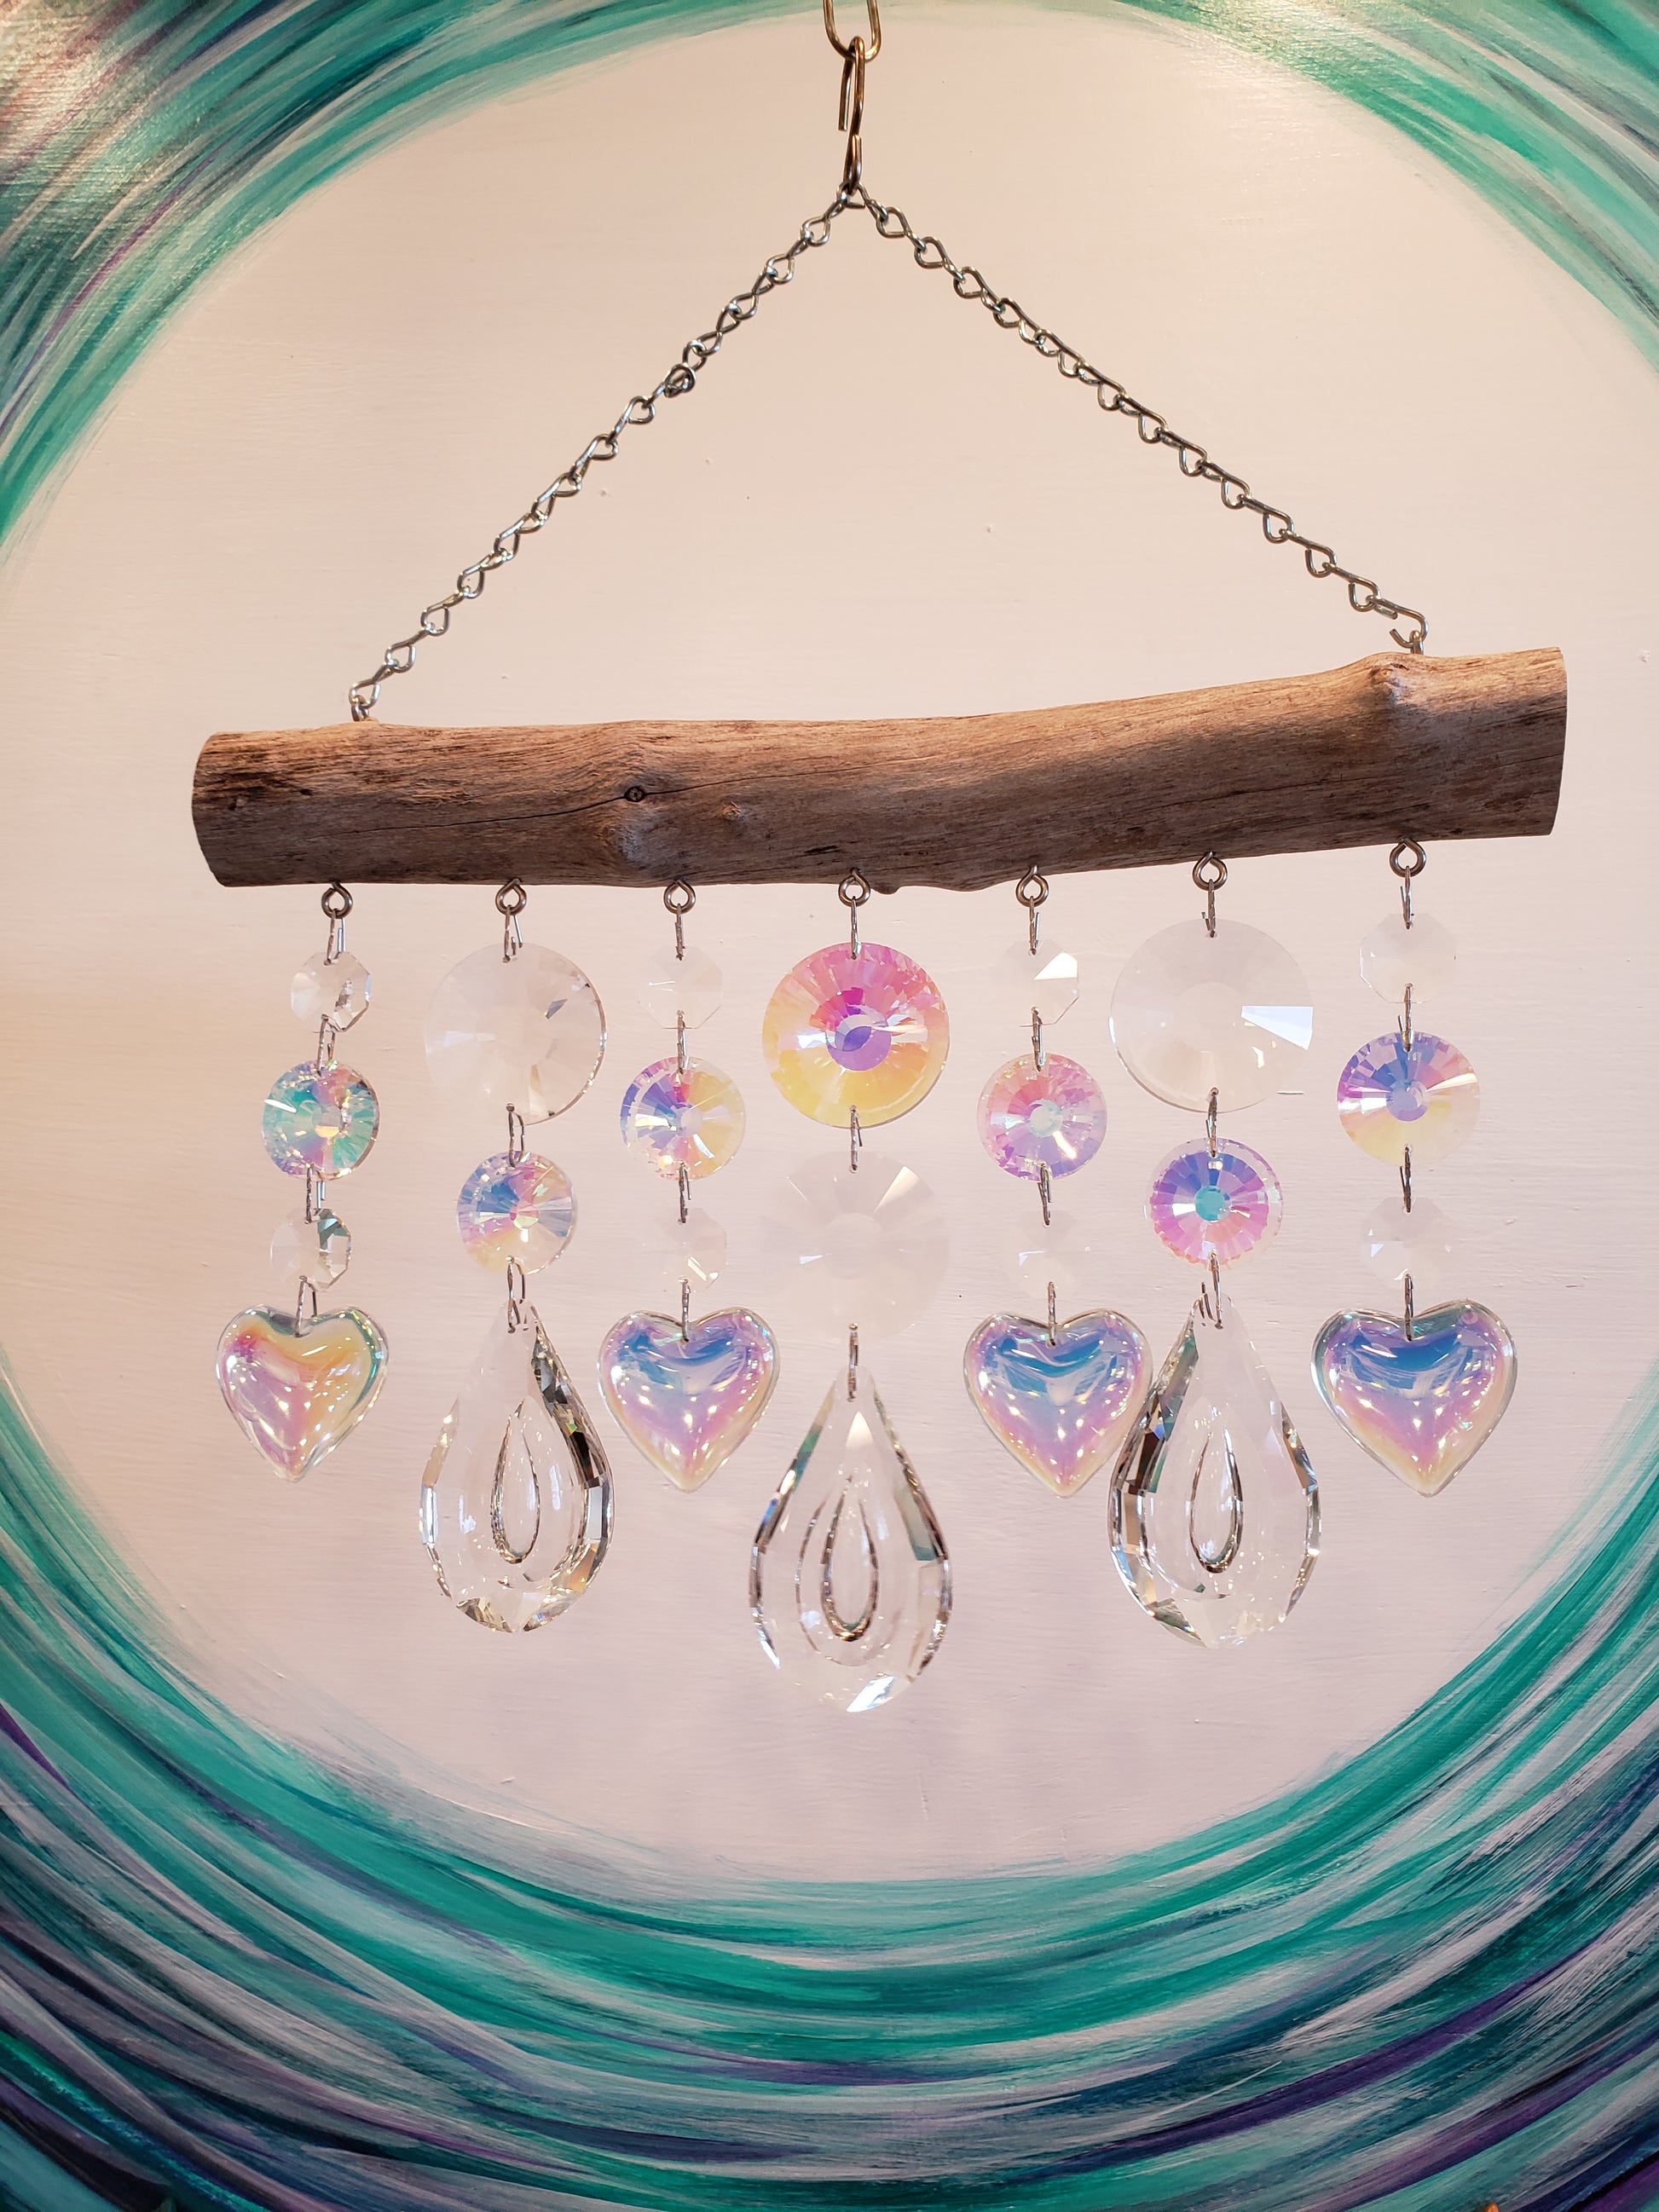 Unique gifts handmade cahandelier crystal sunactcher